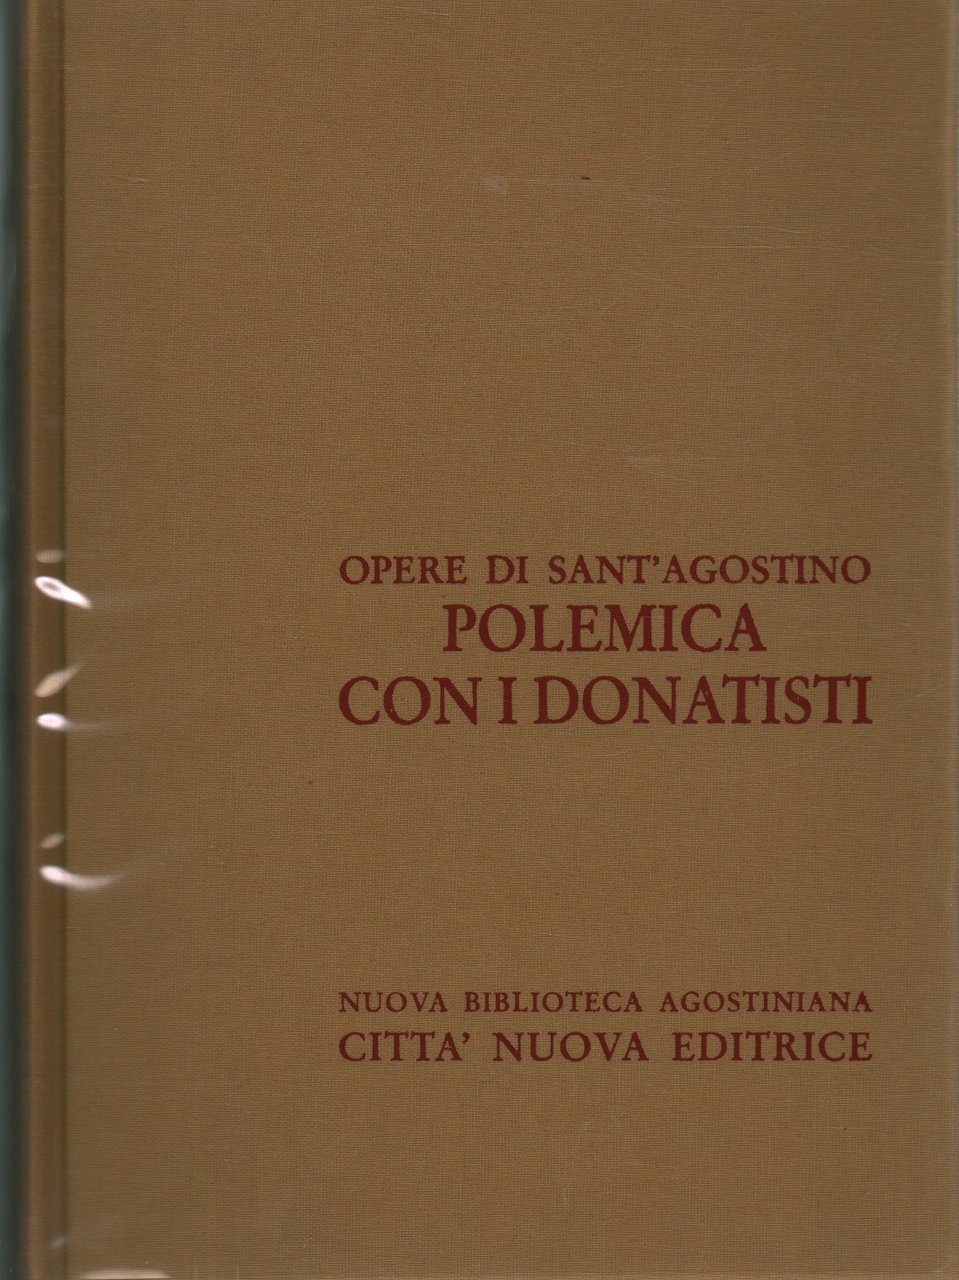 Polemica con i donatisti (vol. XVI/II)